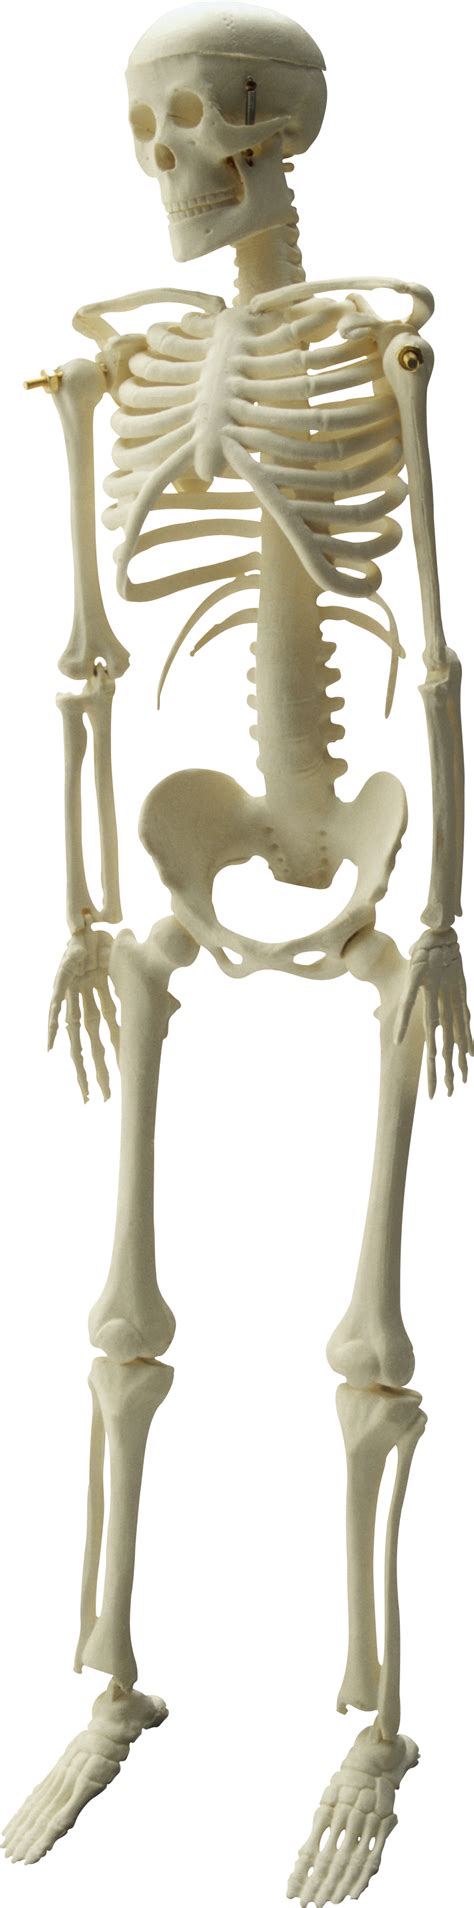 Skeleton Png